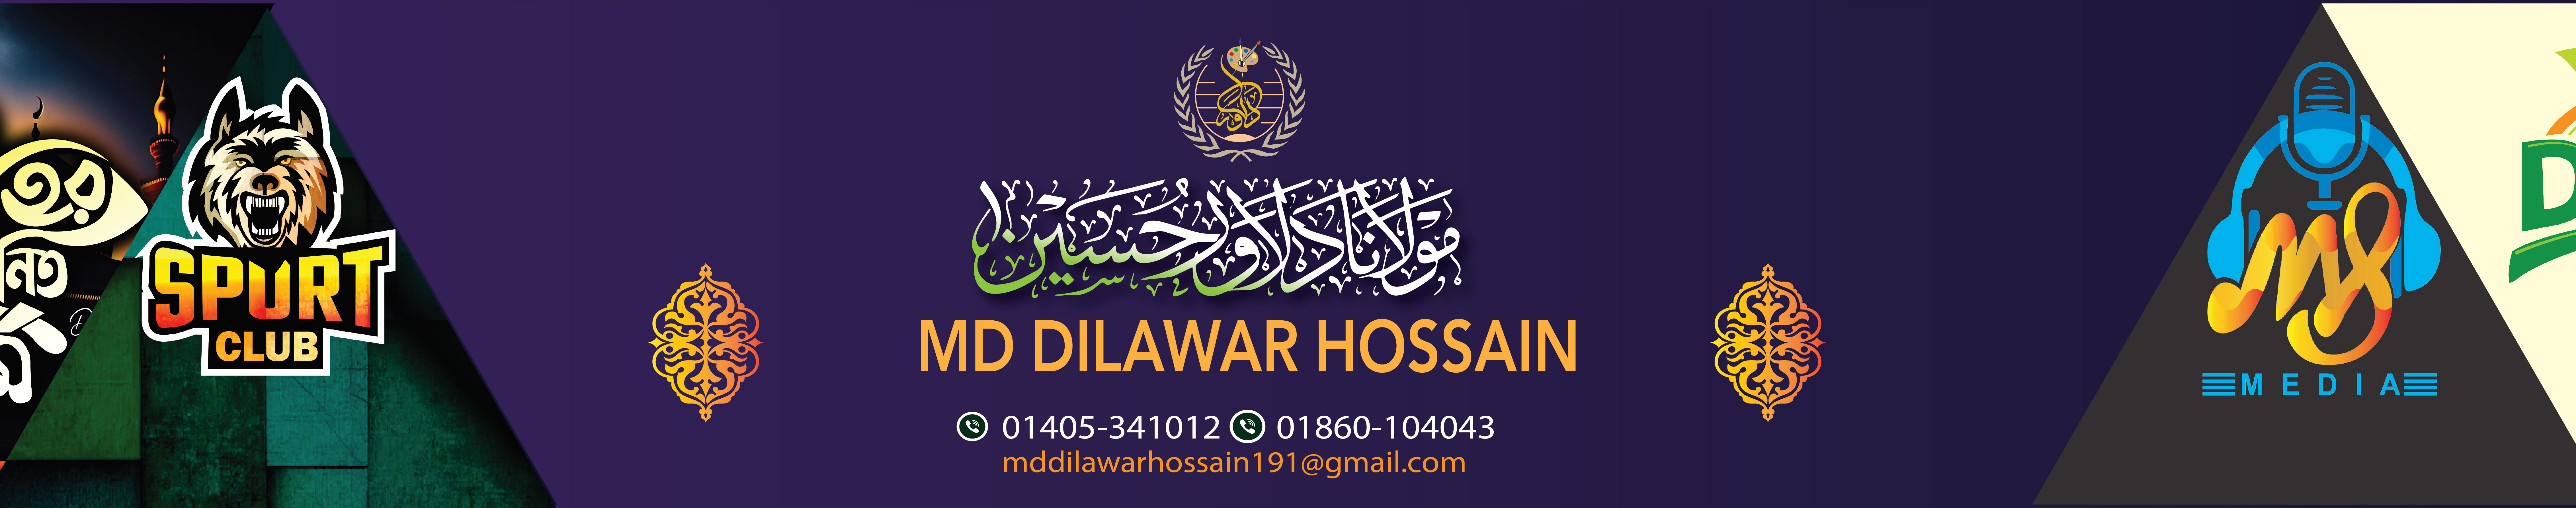 Dilawar Hossains profilbanner